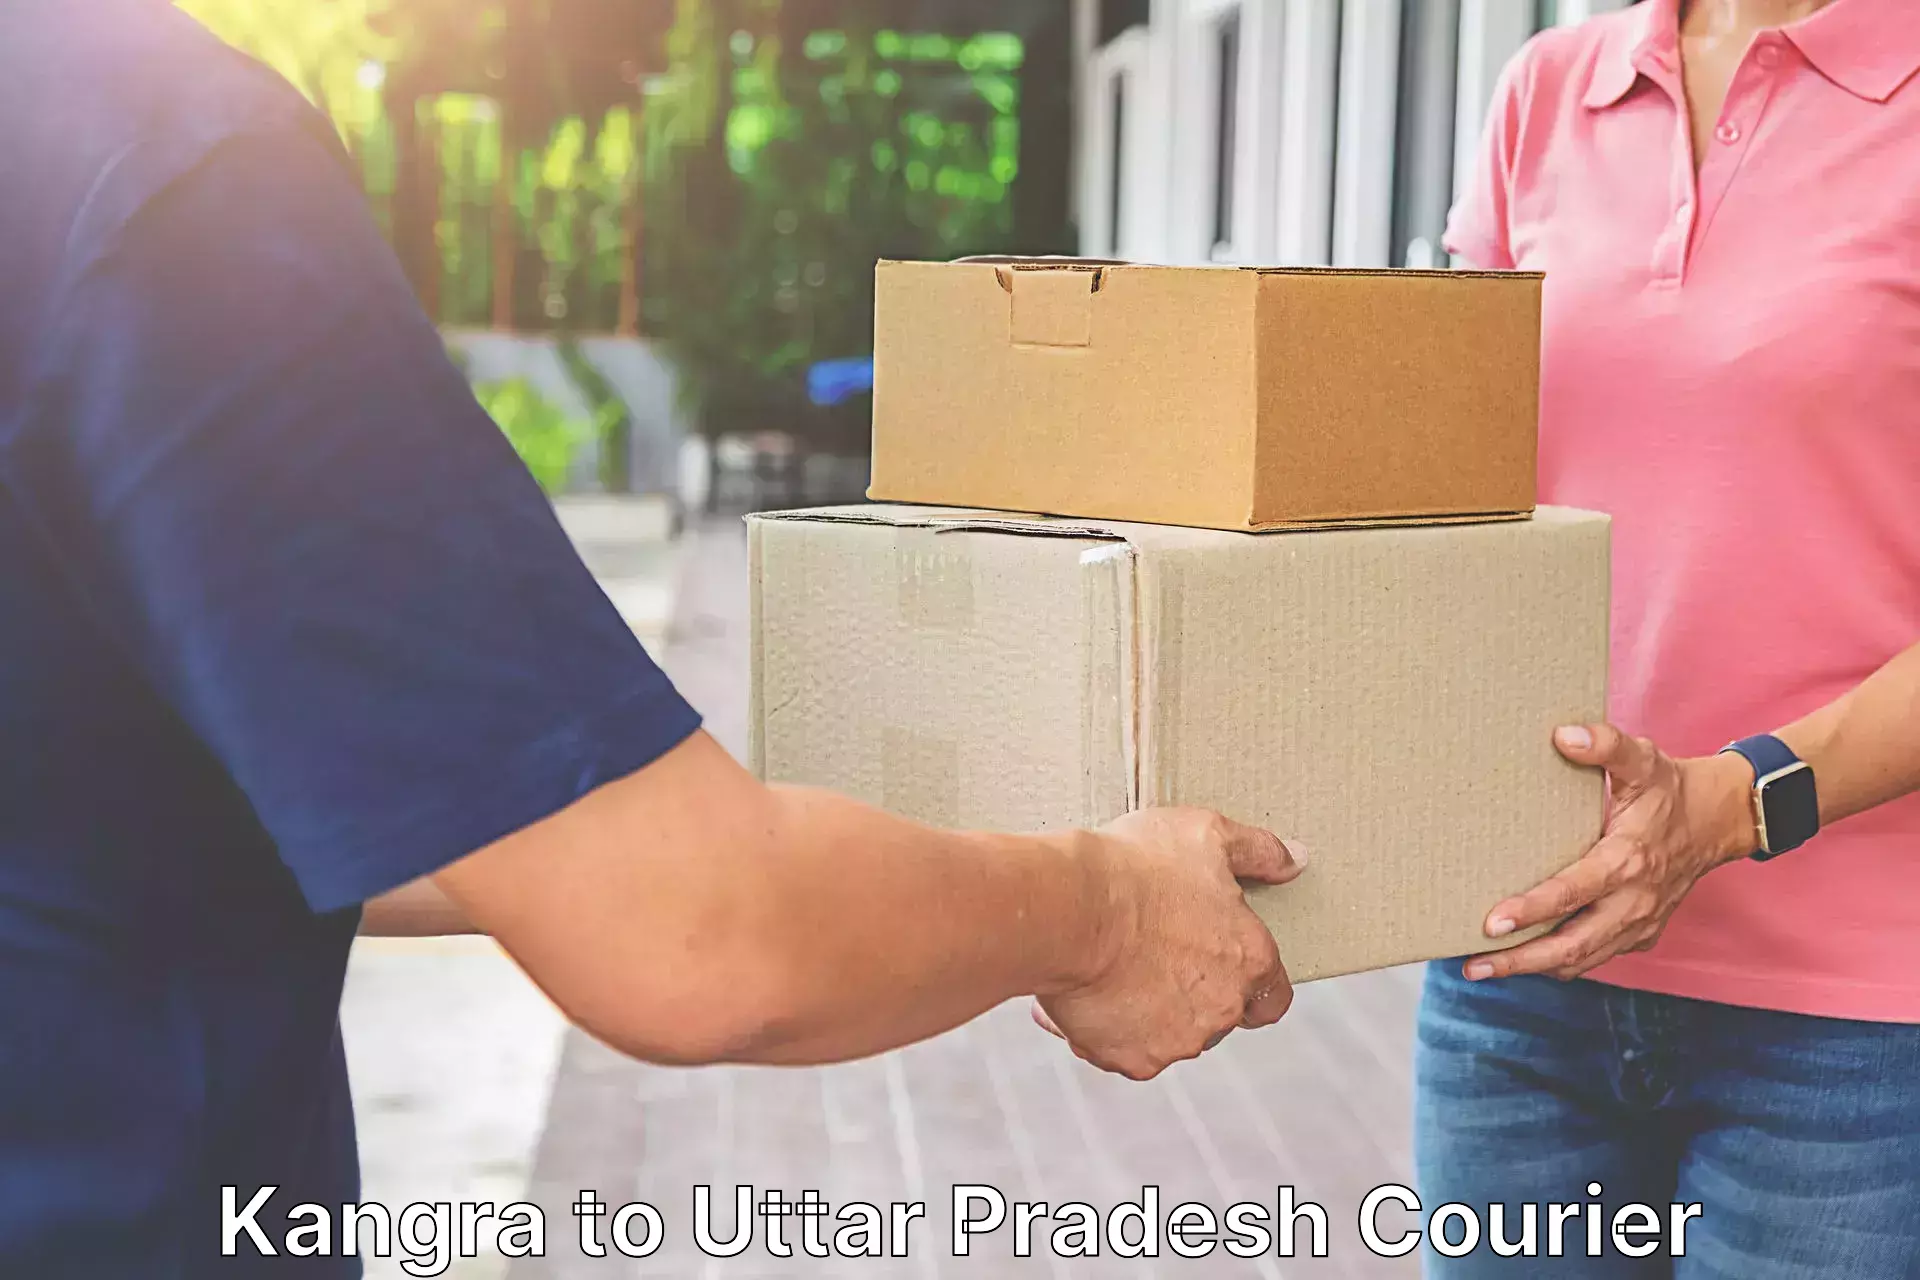 Customer-focused courier Kangra to Uttar Pradesh